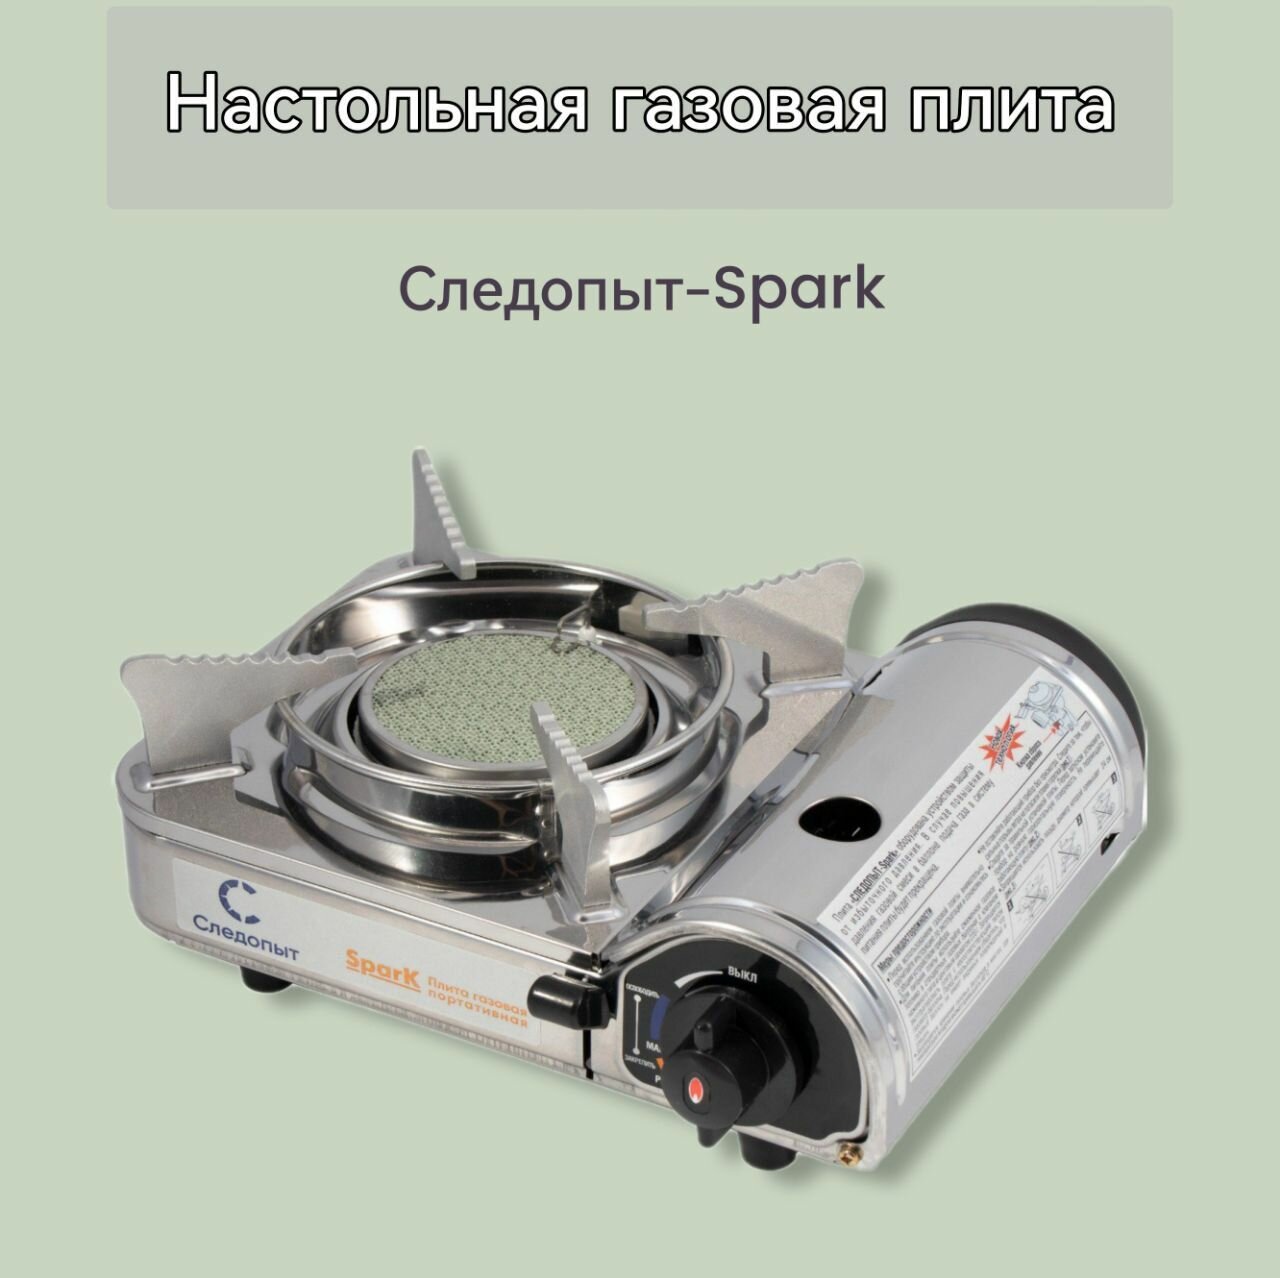 Плита настольная газовая керамическая "Следопыт-Spark" (защита от избыточного давления)